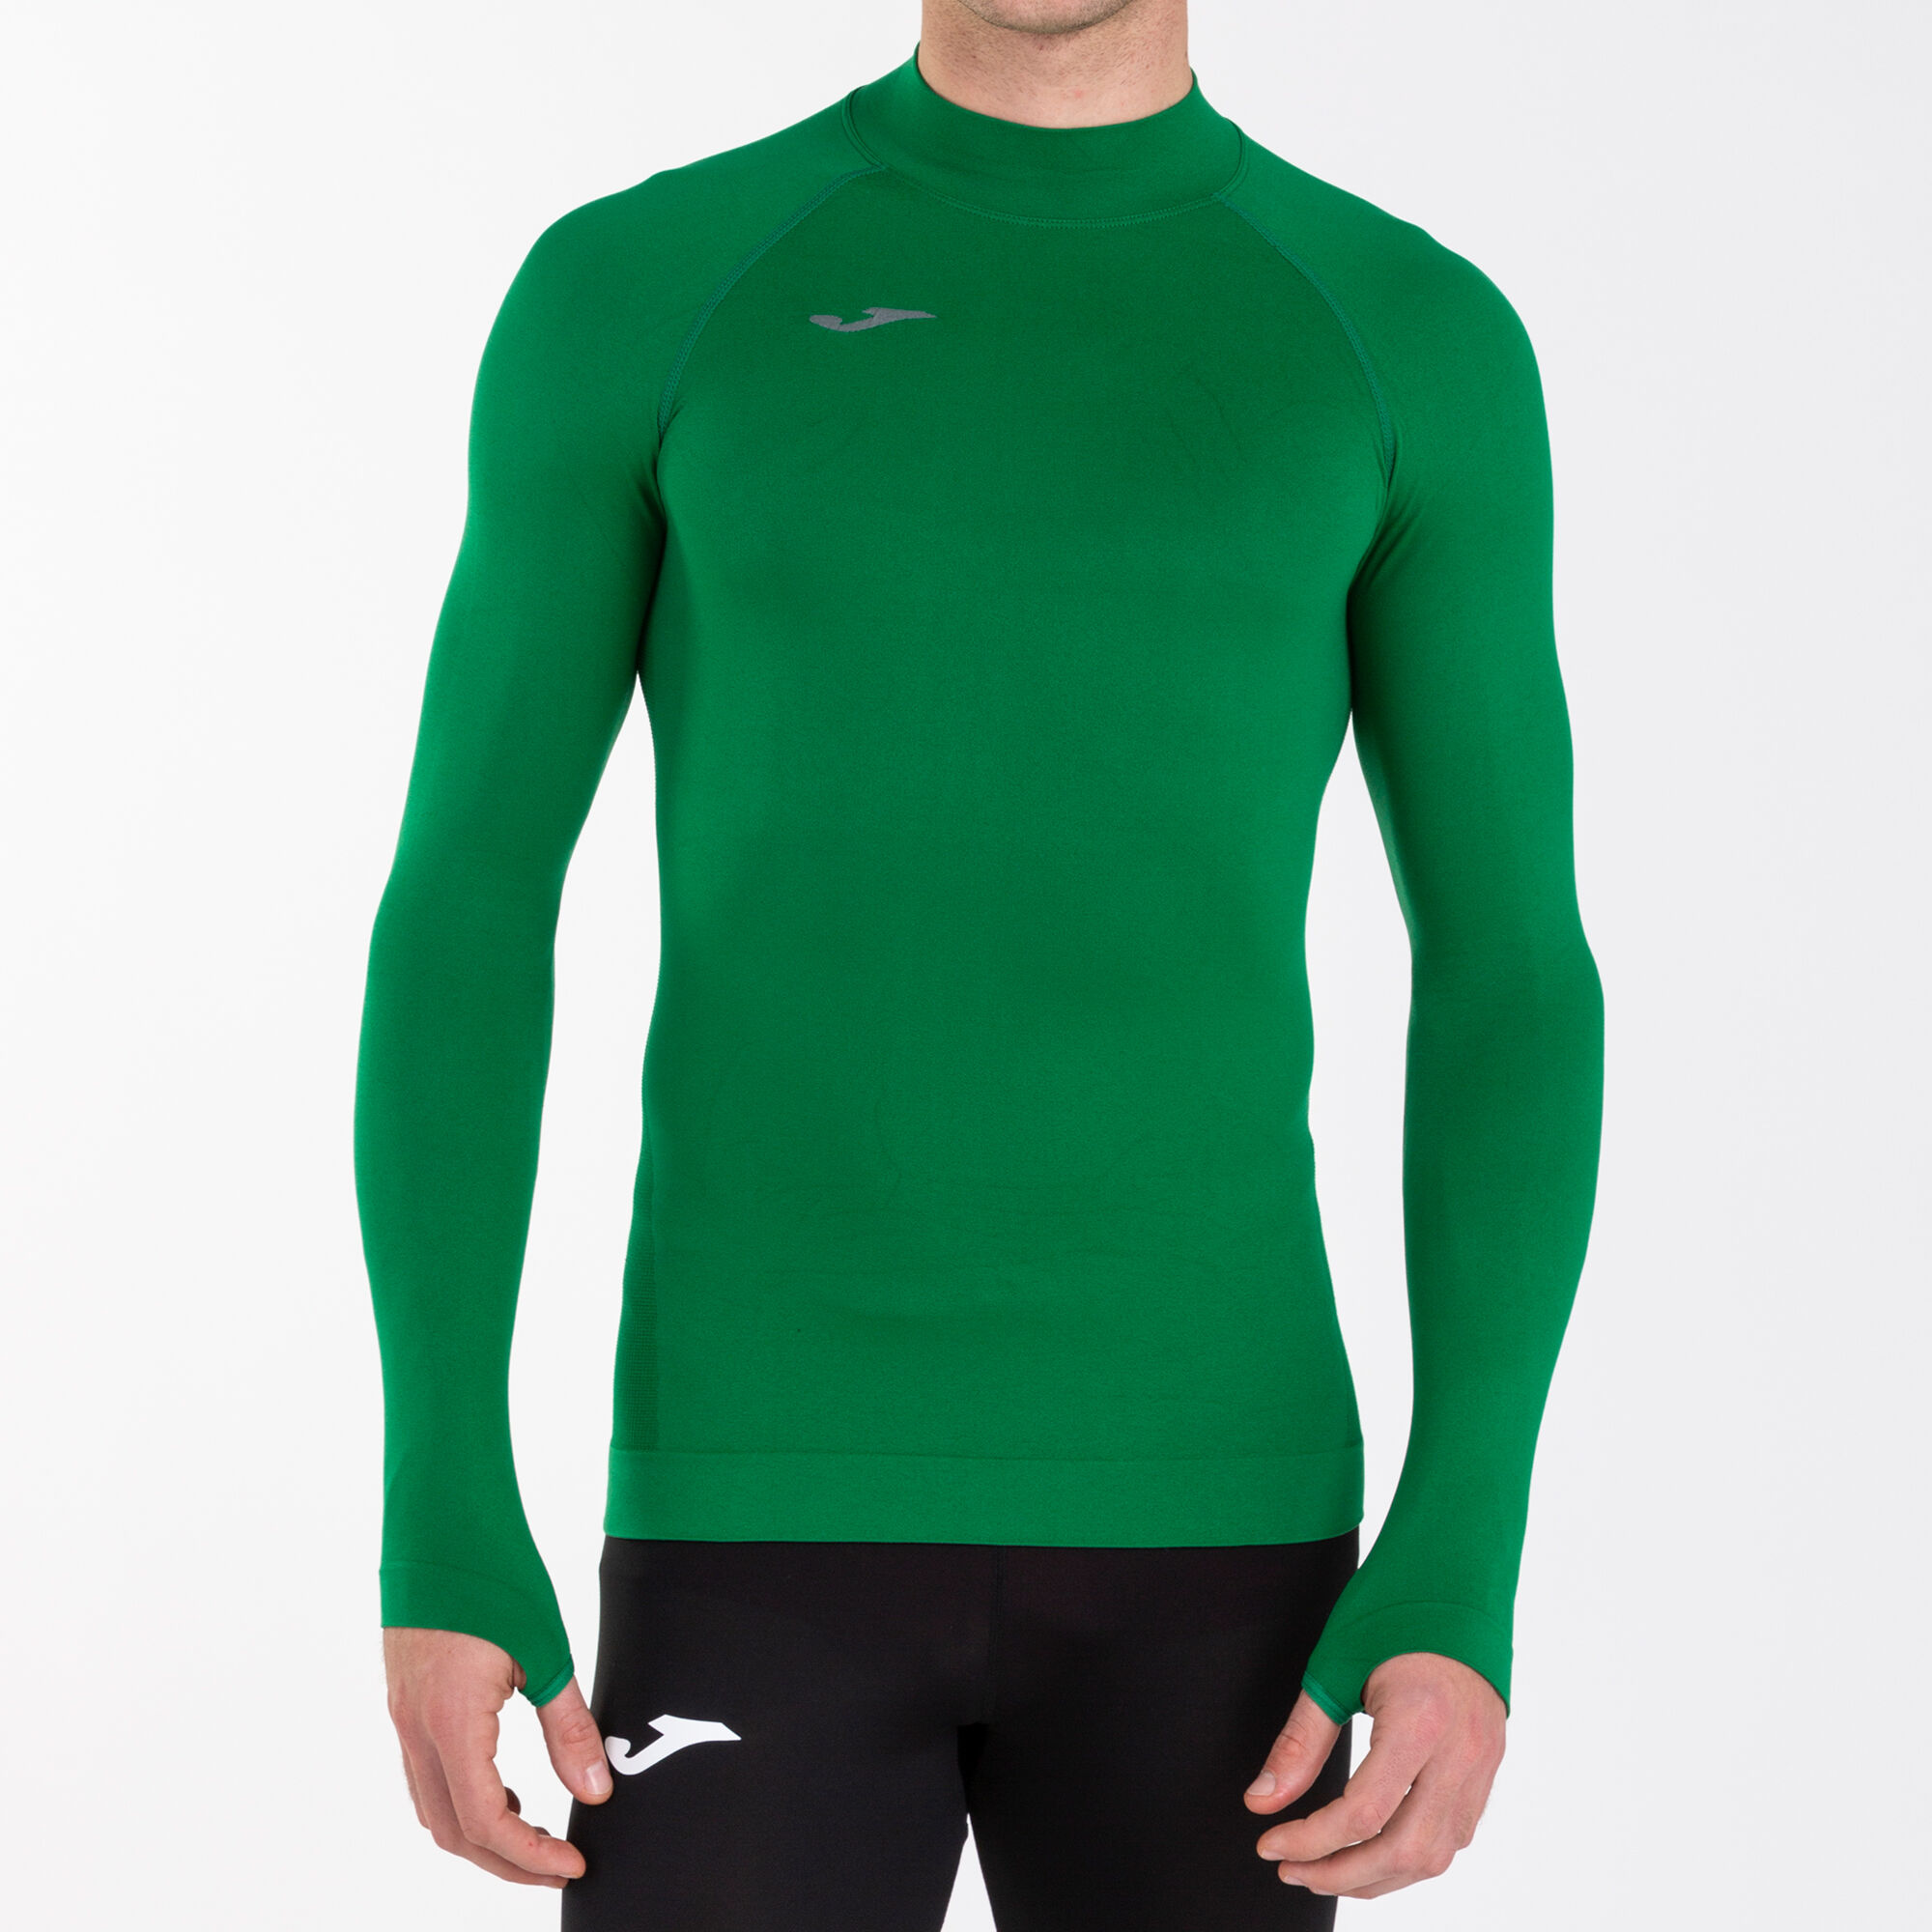 Camiseta manga larga unisex Brama Classic verde